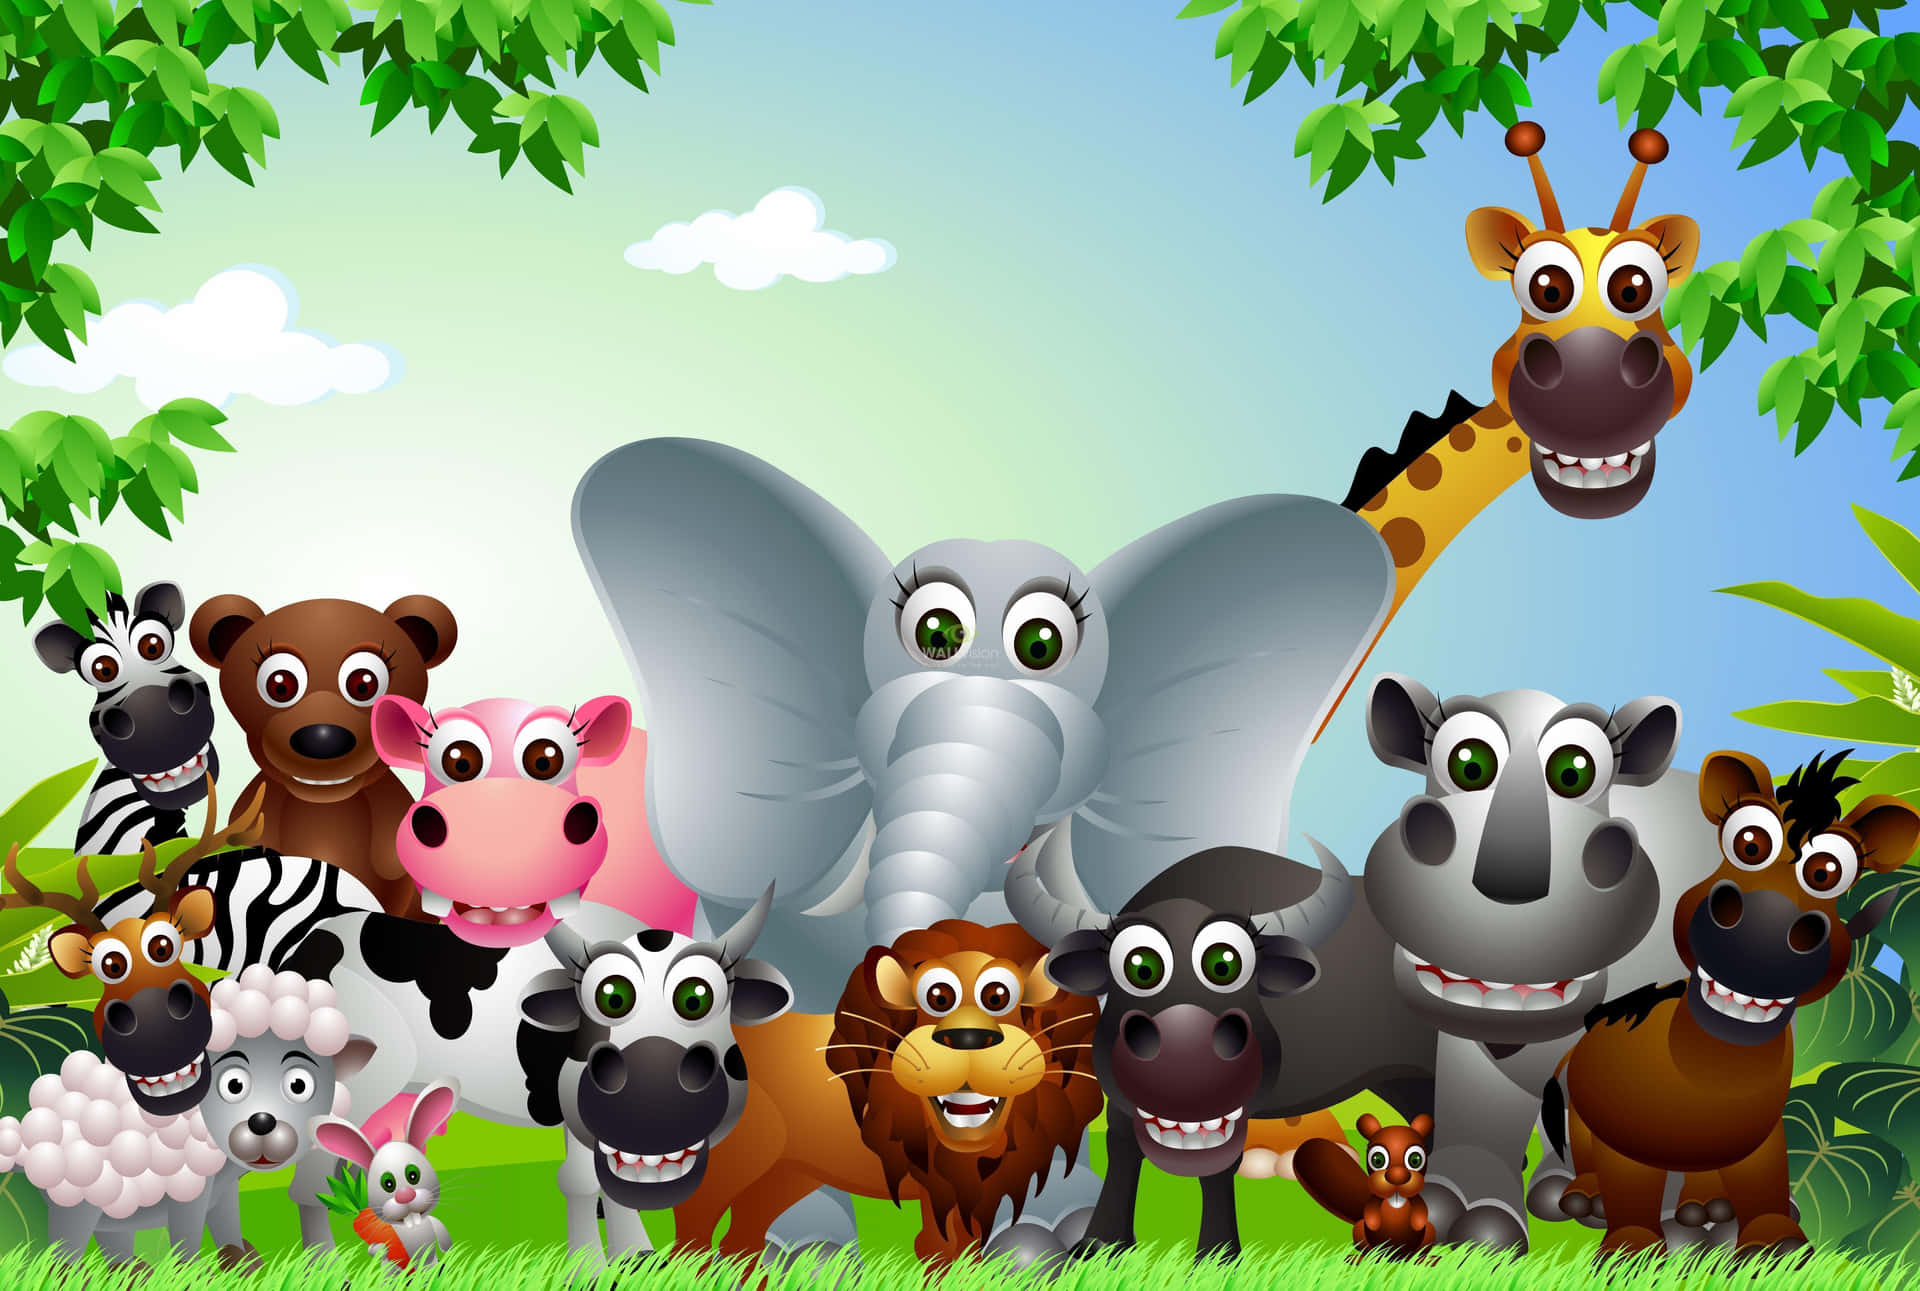 Download Cartoon Animal Zoo Wallpaper | Wallpapers.com